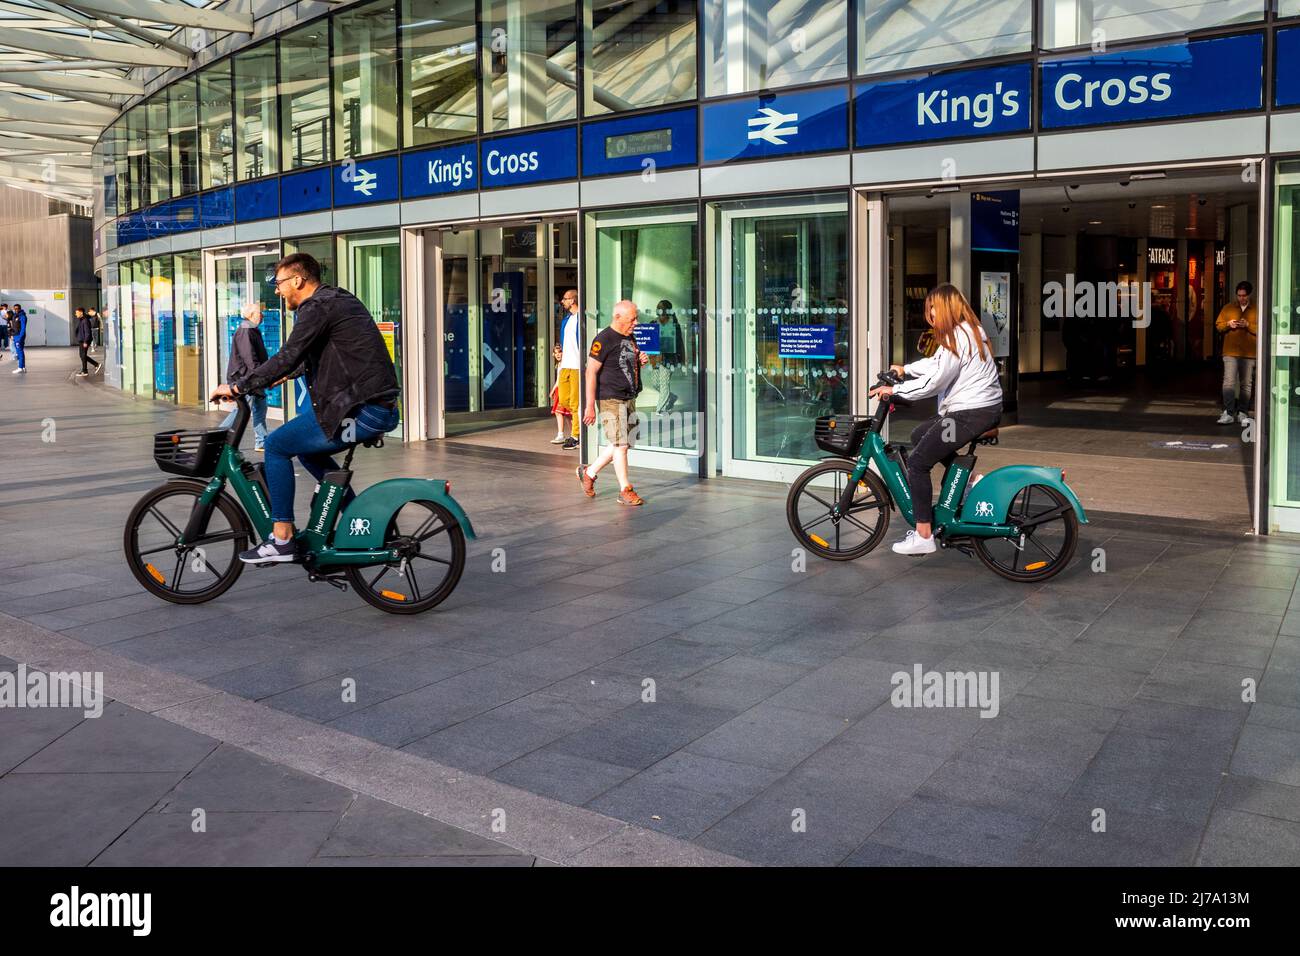 Stazione di Kings Cross Londra - i passeggeri noleggeranno biciclette fuori dalla stazione di Kings Cross di Londra. Noleggio biciclette a Londra. Foto Stock